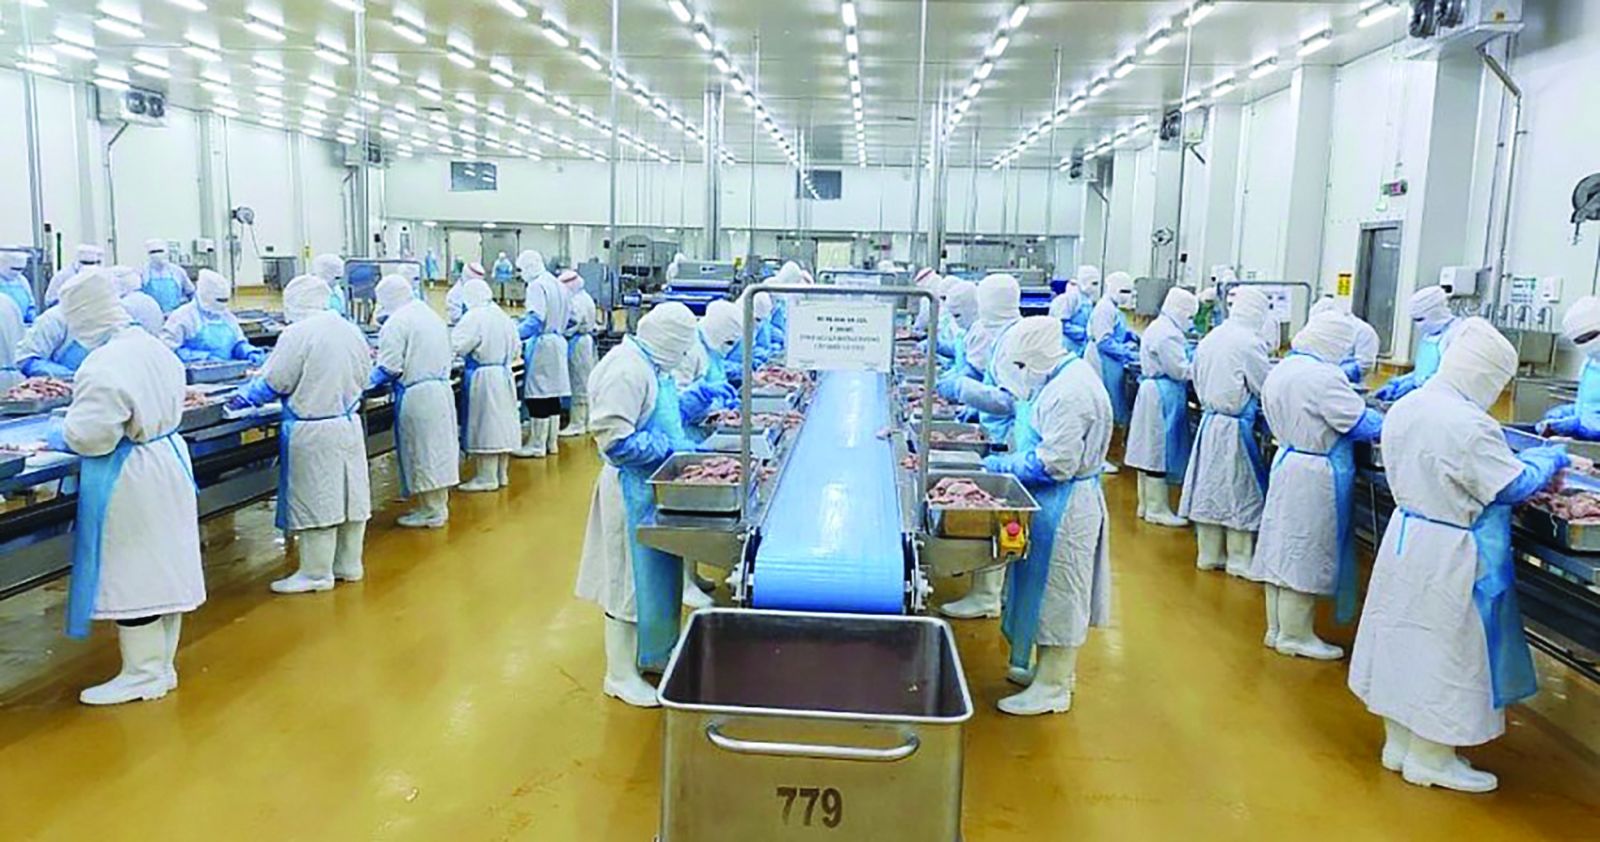  Chế biến thịt gà xuất khẩu tại Công ty cổ phần chăn nuôi C.P Việt Nam (Khu công nghiệp Becamex - Bình Phước)